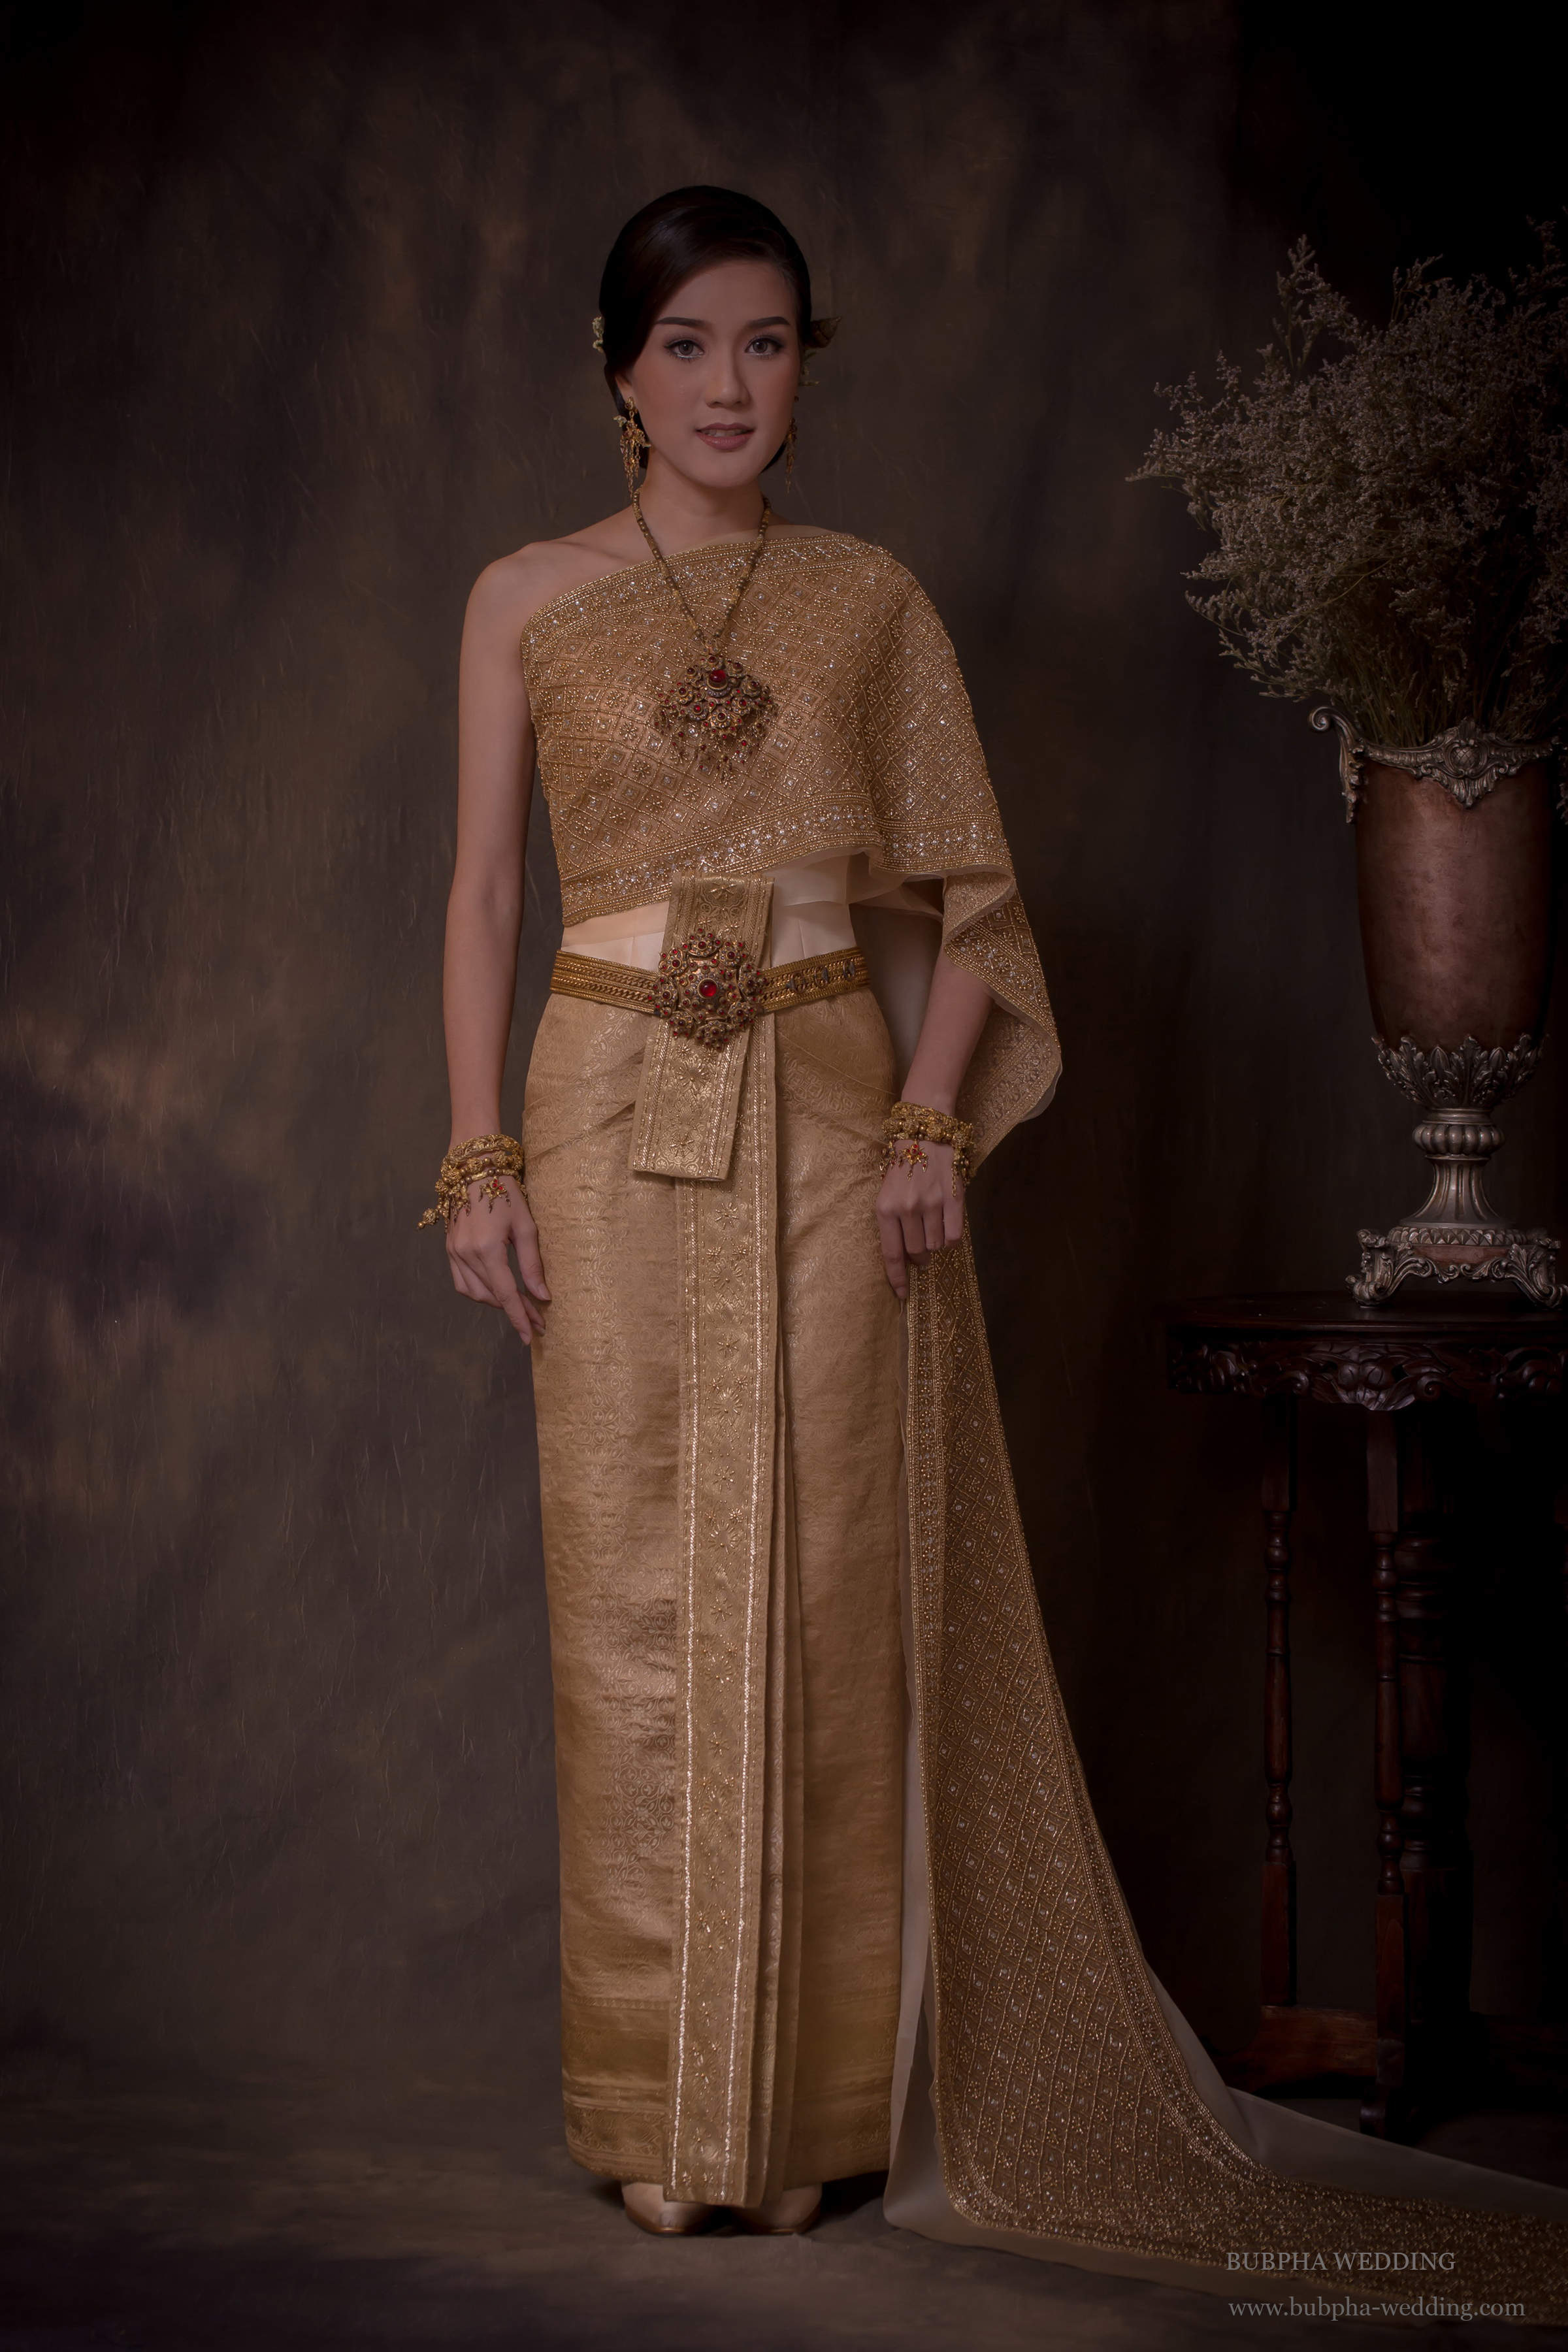 ชุดไทยผ้าโบราณเทียม สีทอง ชุดที่  3